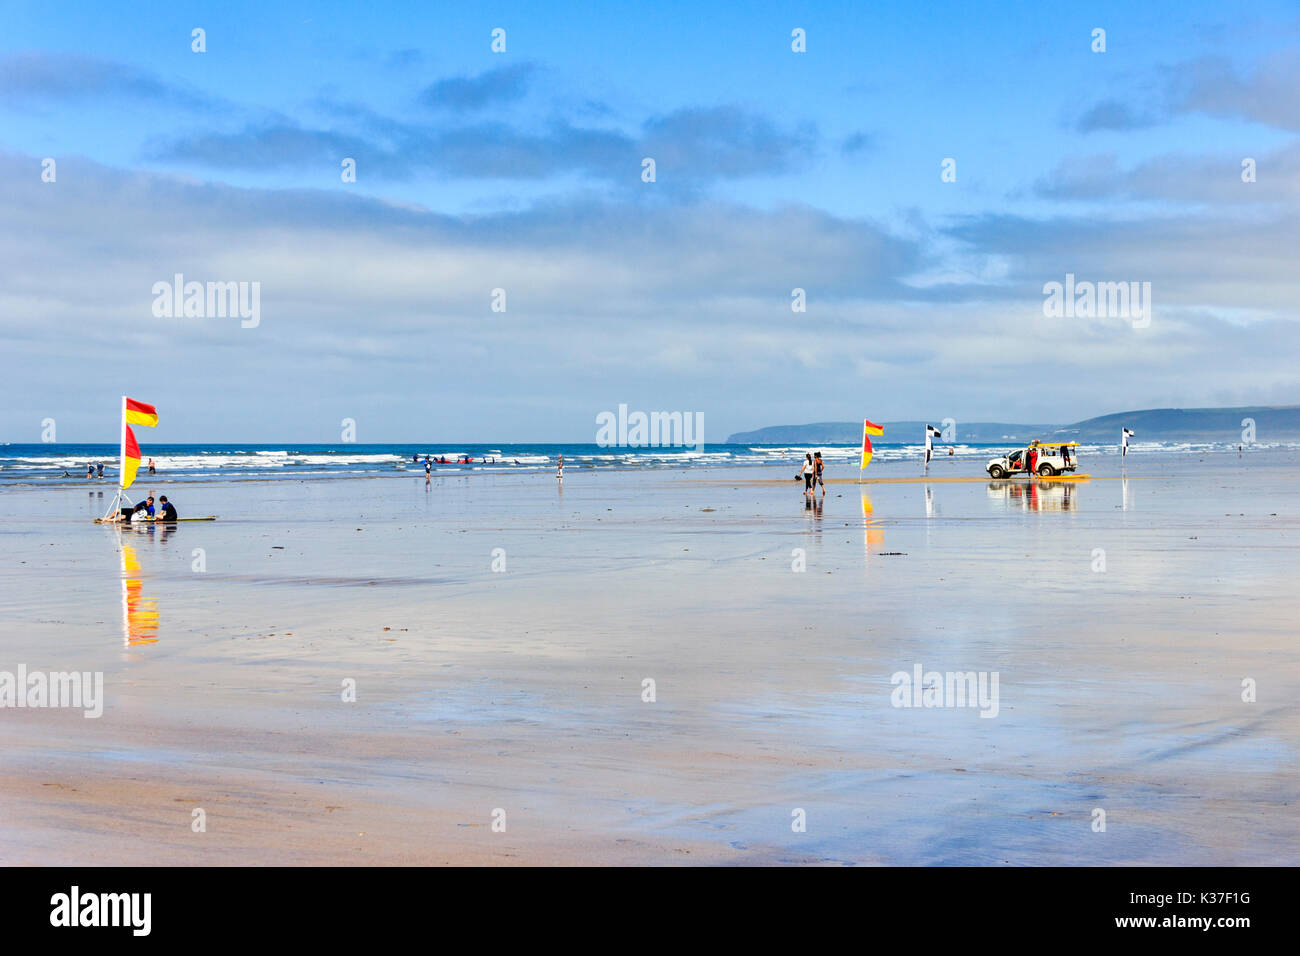 Drapeaux d'avertissement rouges et jaunes, les surfers et sauveteur RNLI véhicule sur la plage de sable à marée basse, Westward Ho !, Devon, England, UK Banque D'Images